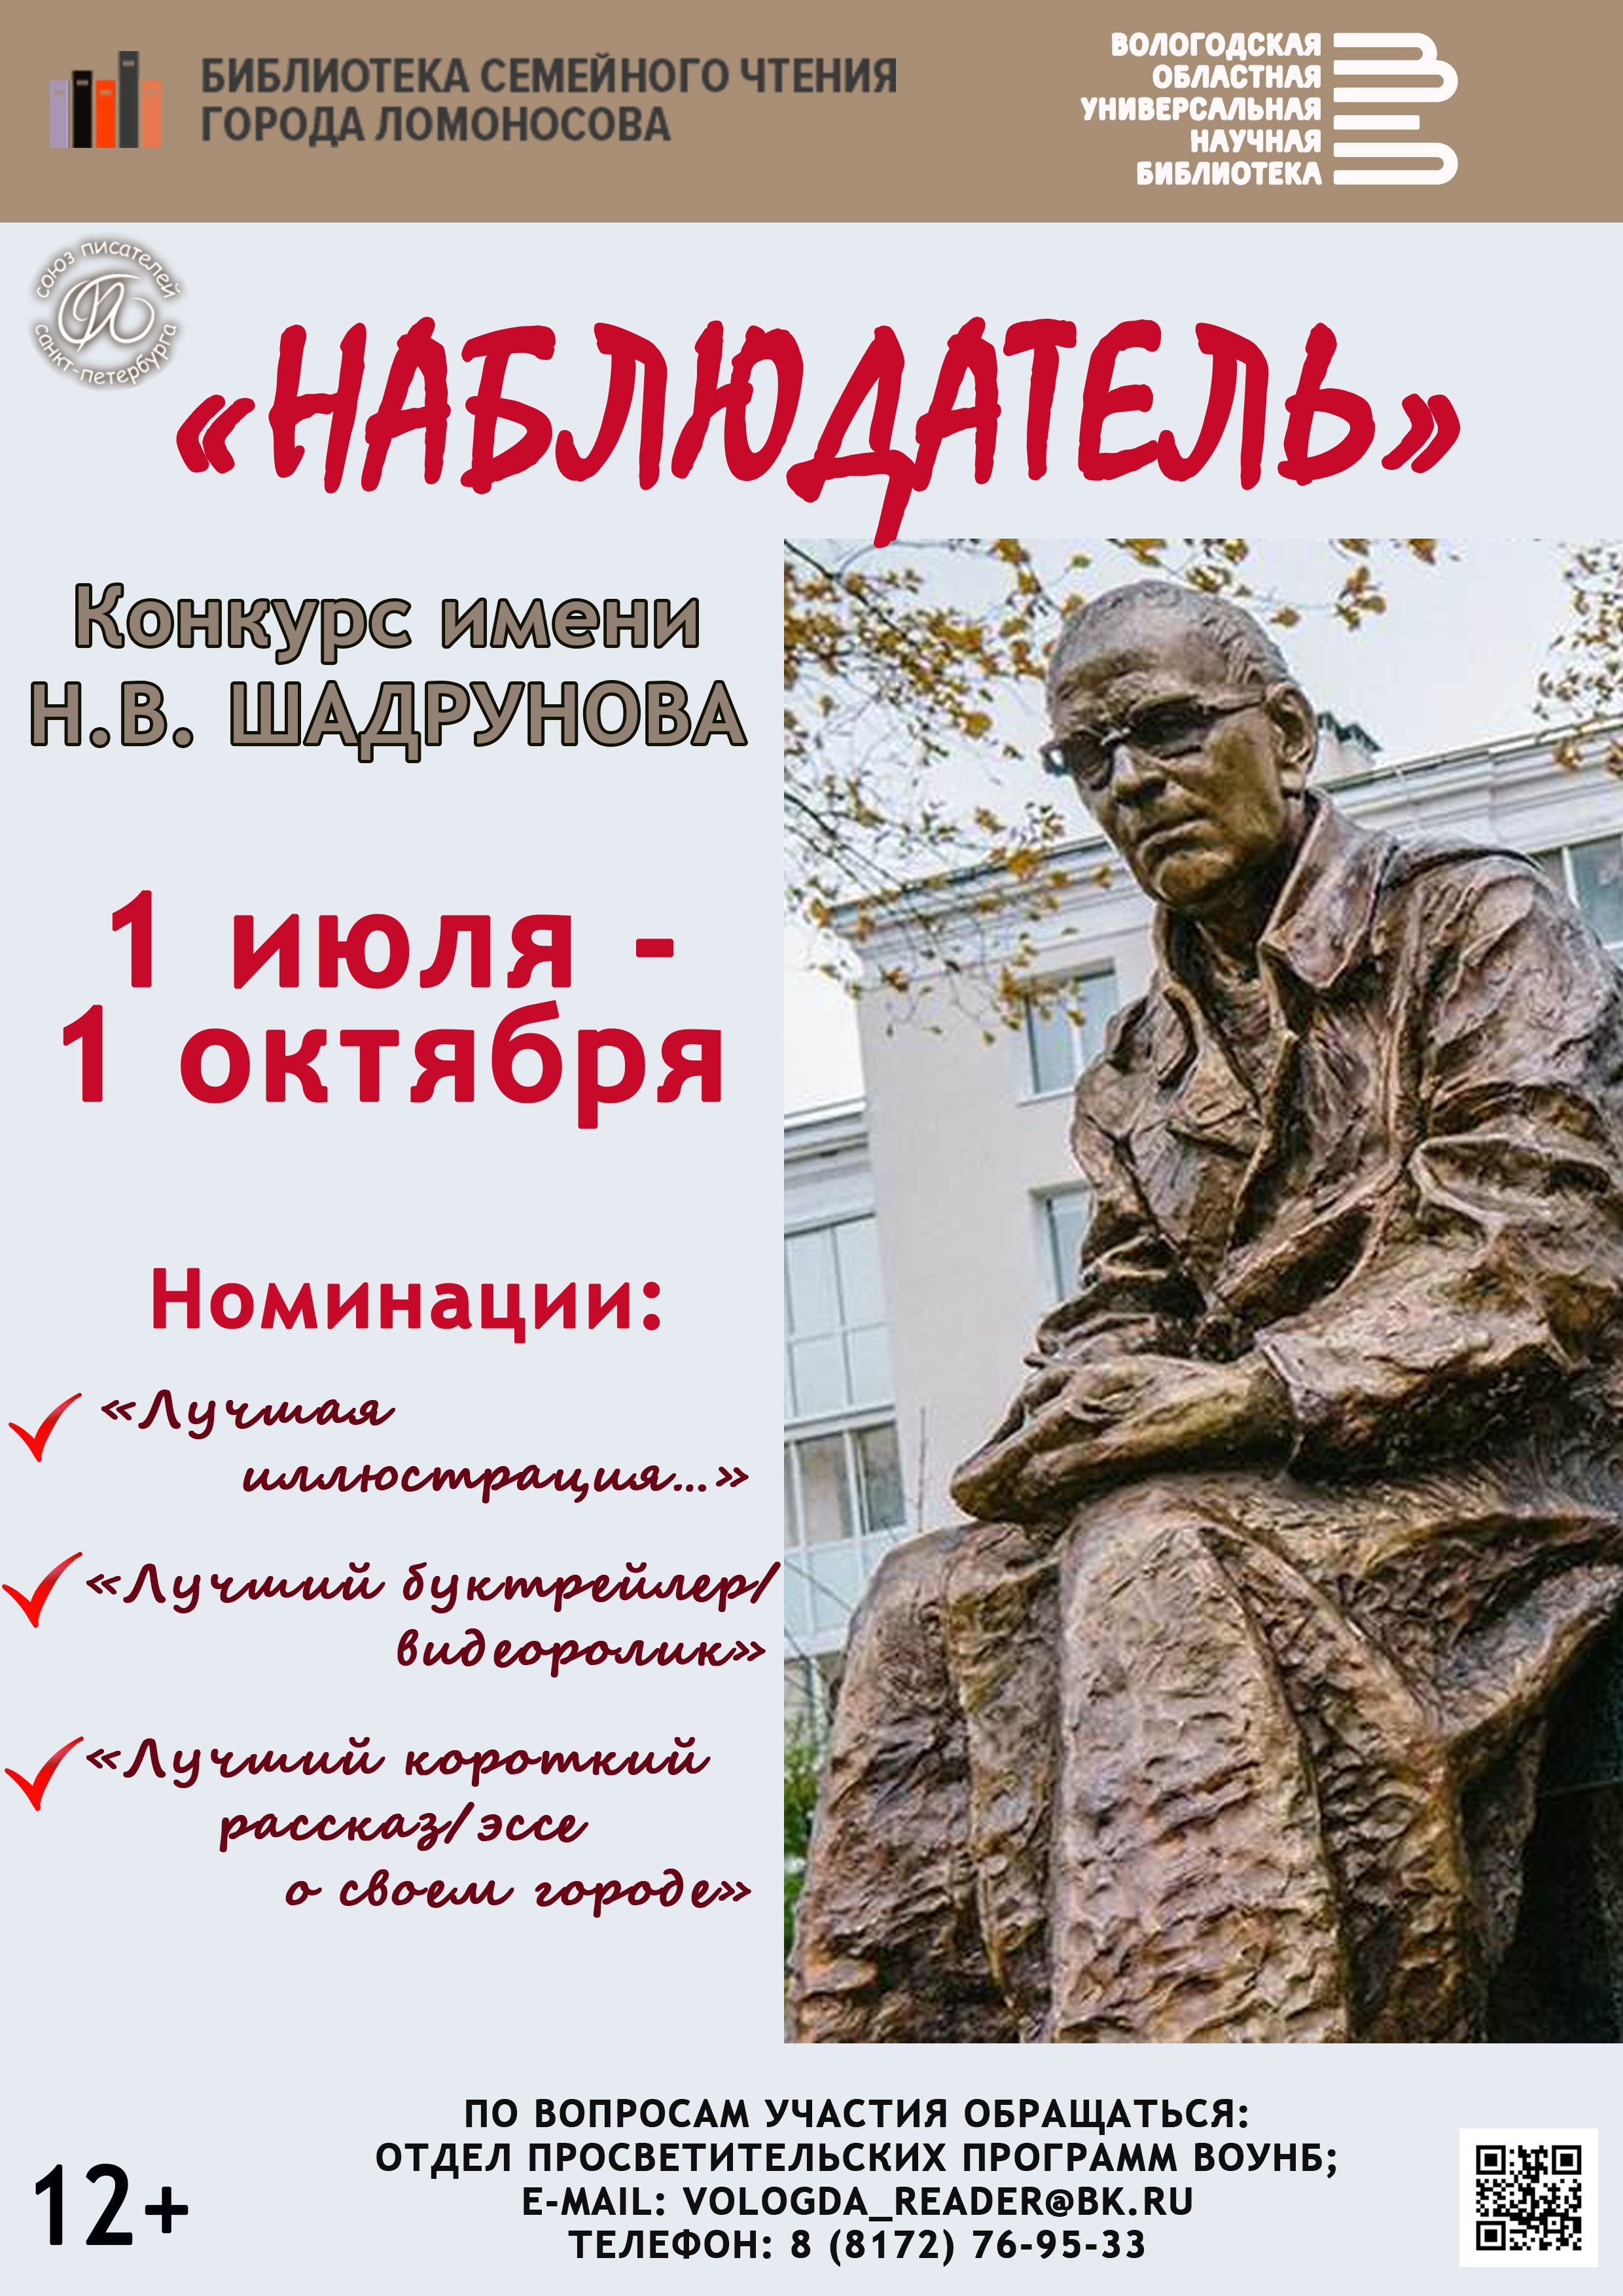 Вологодская областная научная библиотека приглашает принять участие в Конкурсе имени Николая Шадрунова